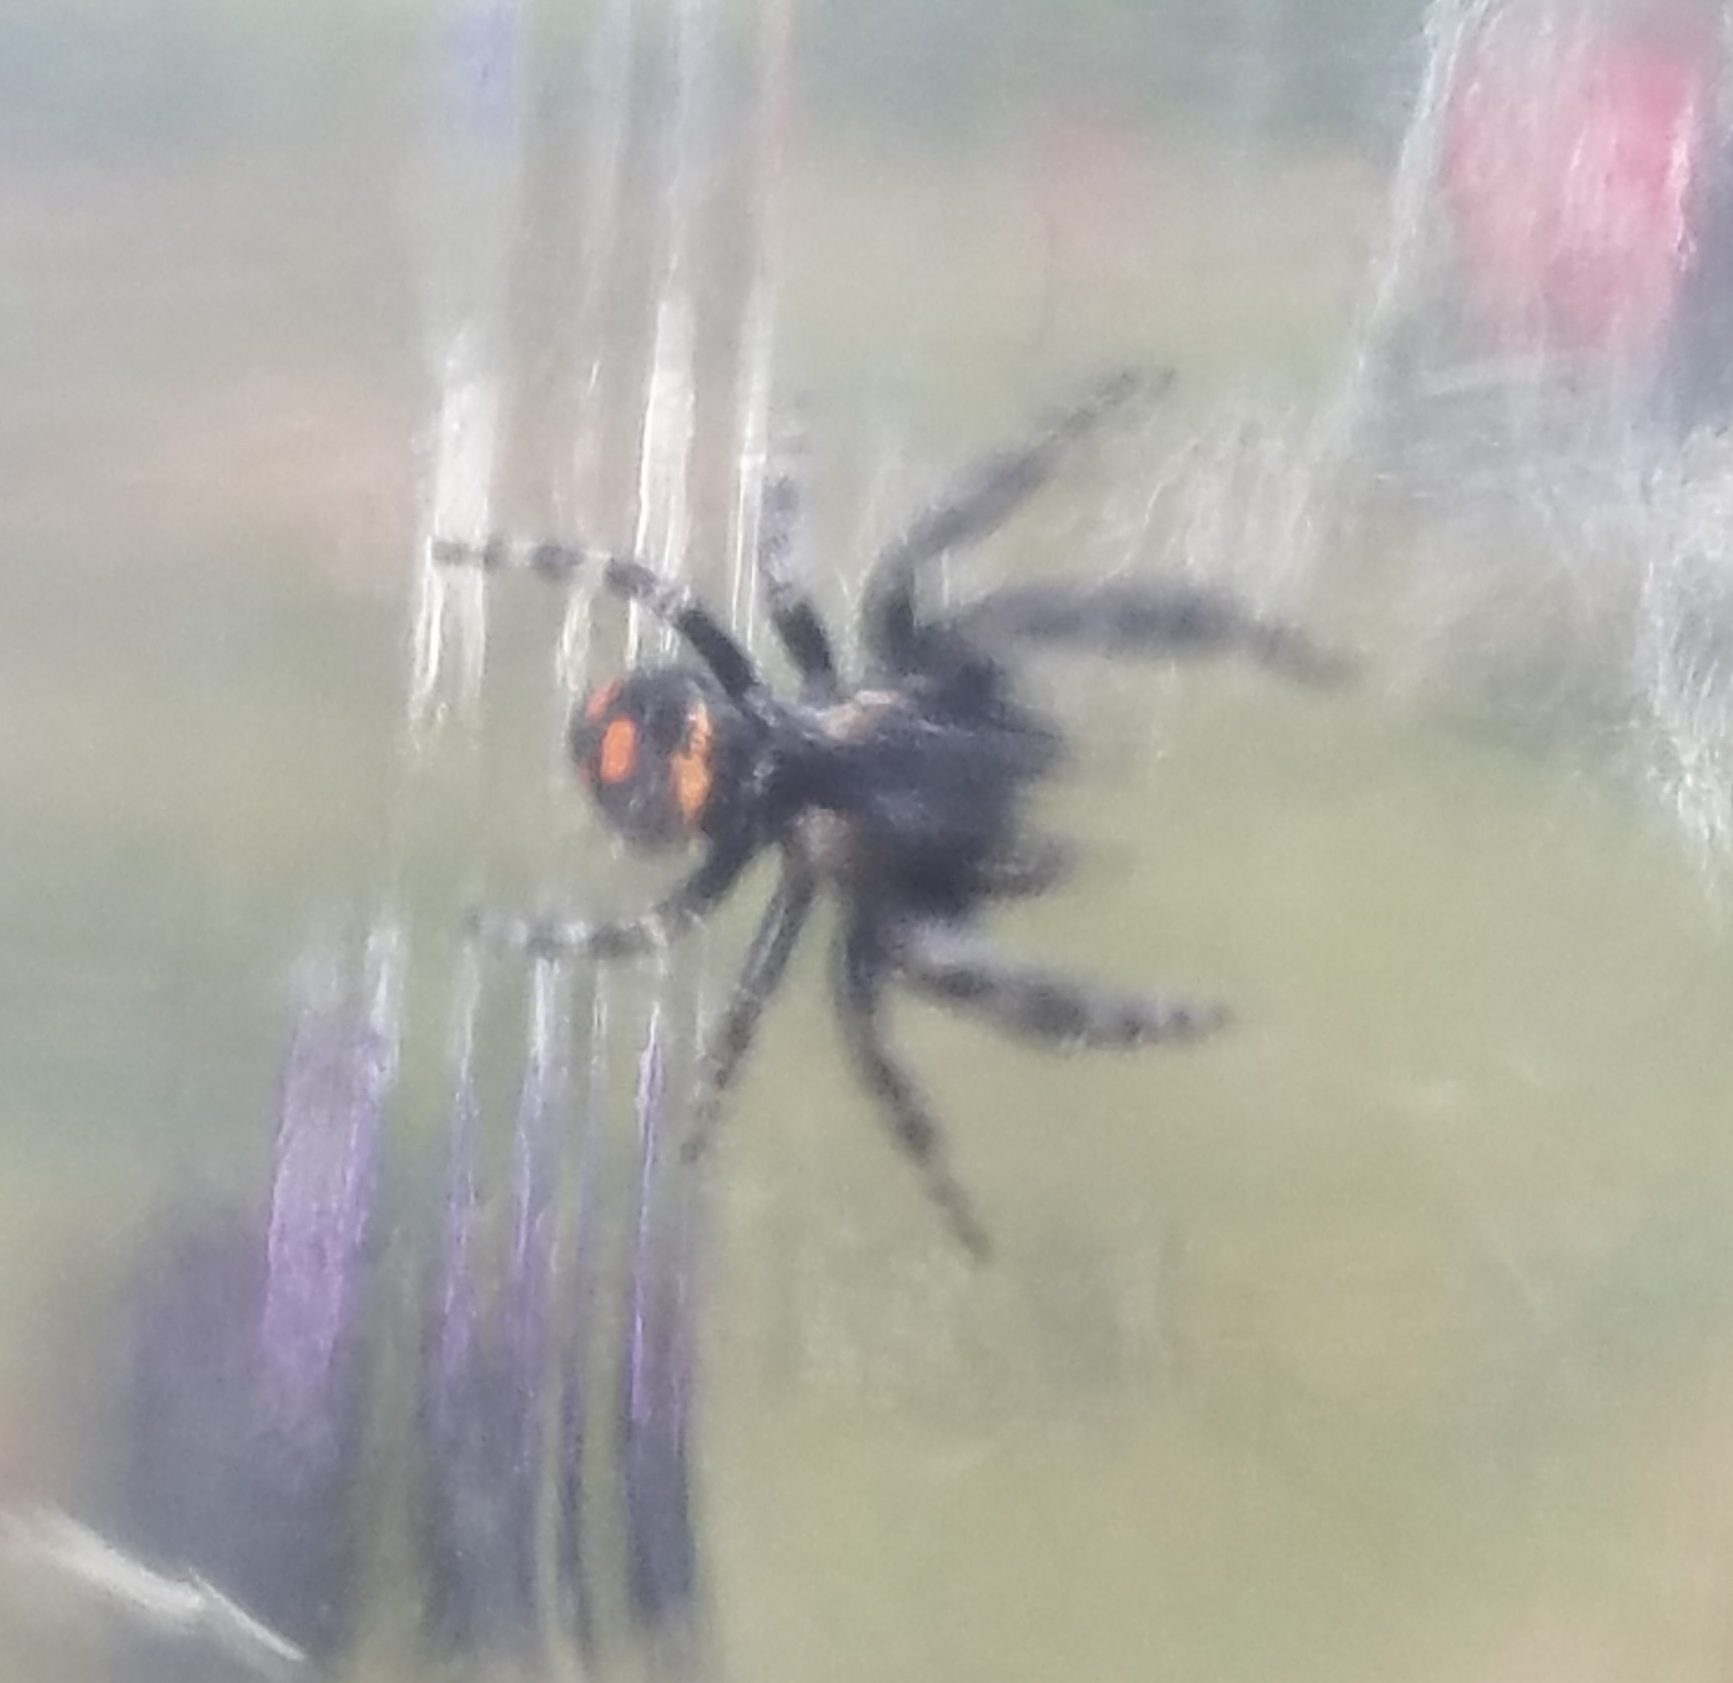 Picture of Phidippus regius (Regal Jumping Spider) - Dorsal